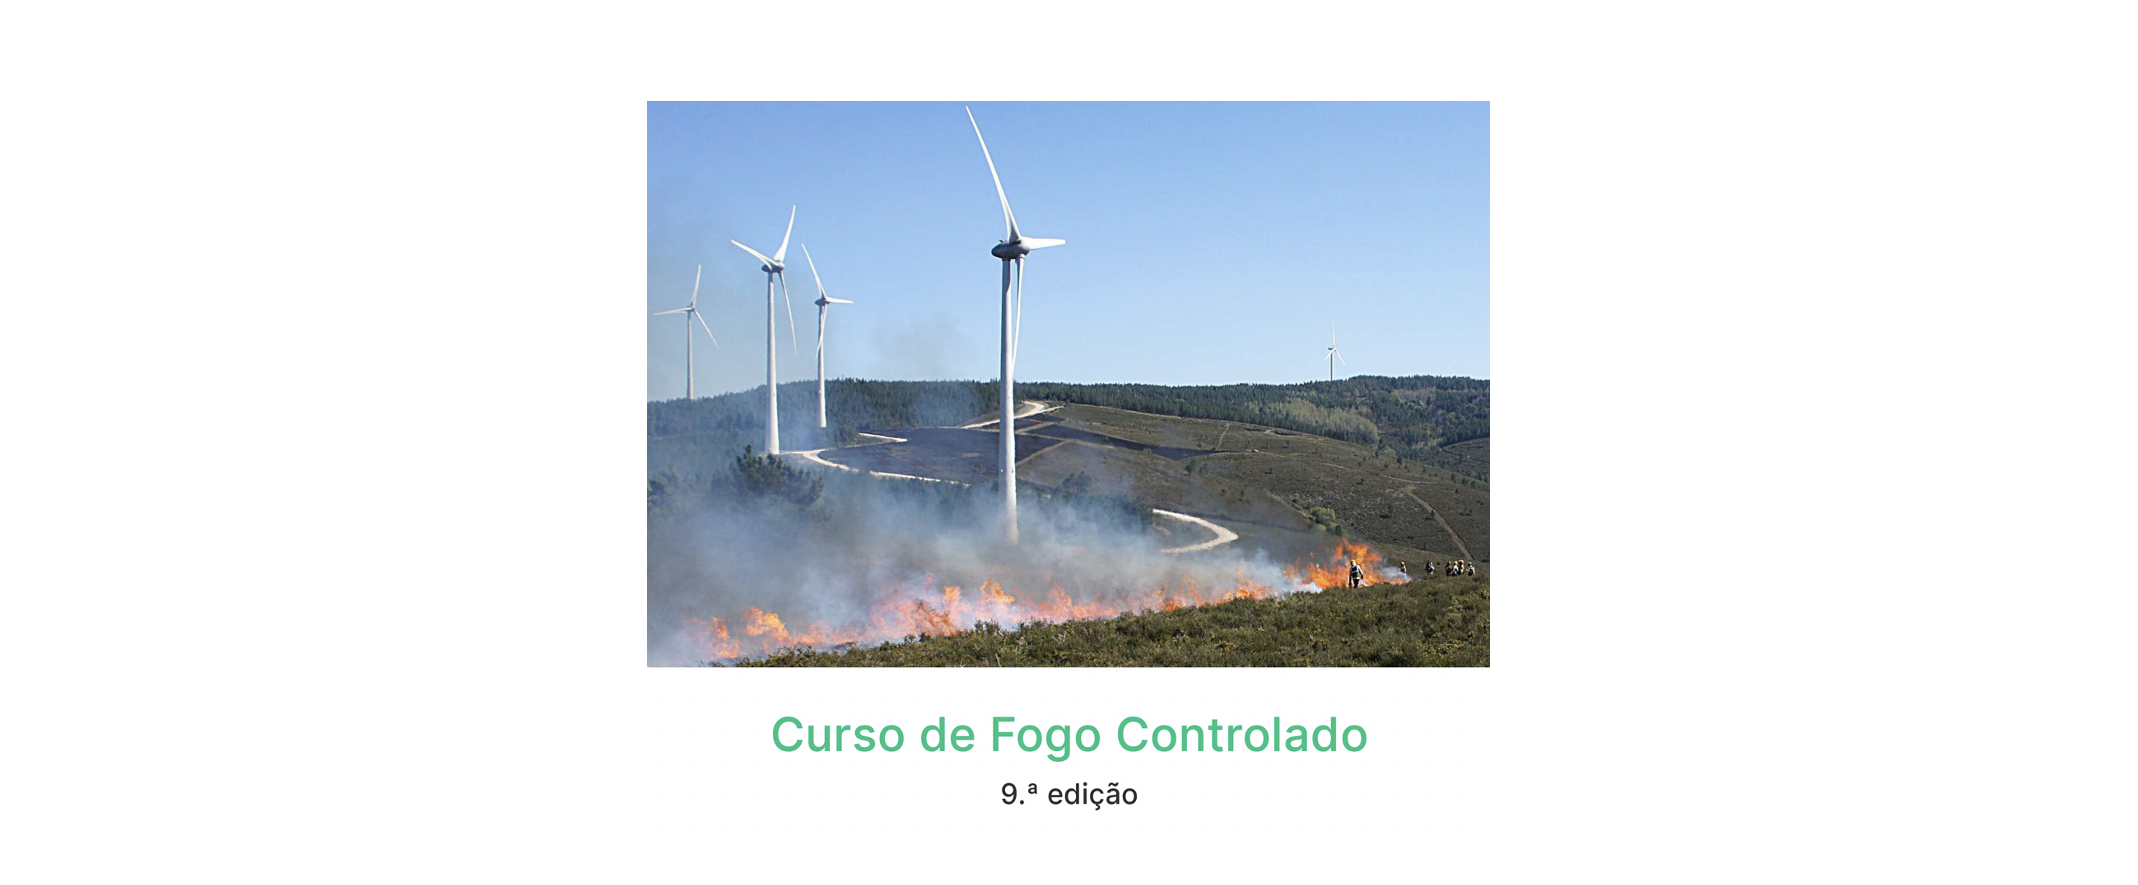 31 janeiro | Escola Superior Agrária de Coimbra promove Curso de Fogo Controlado